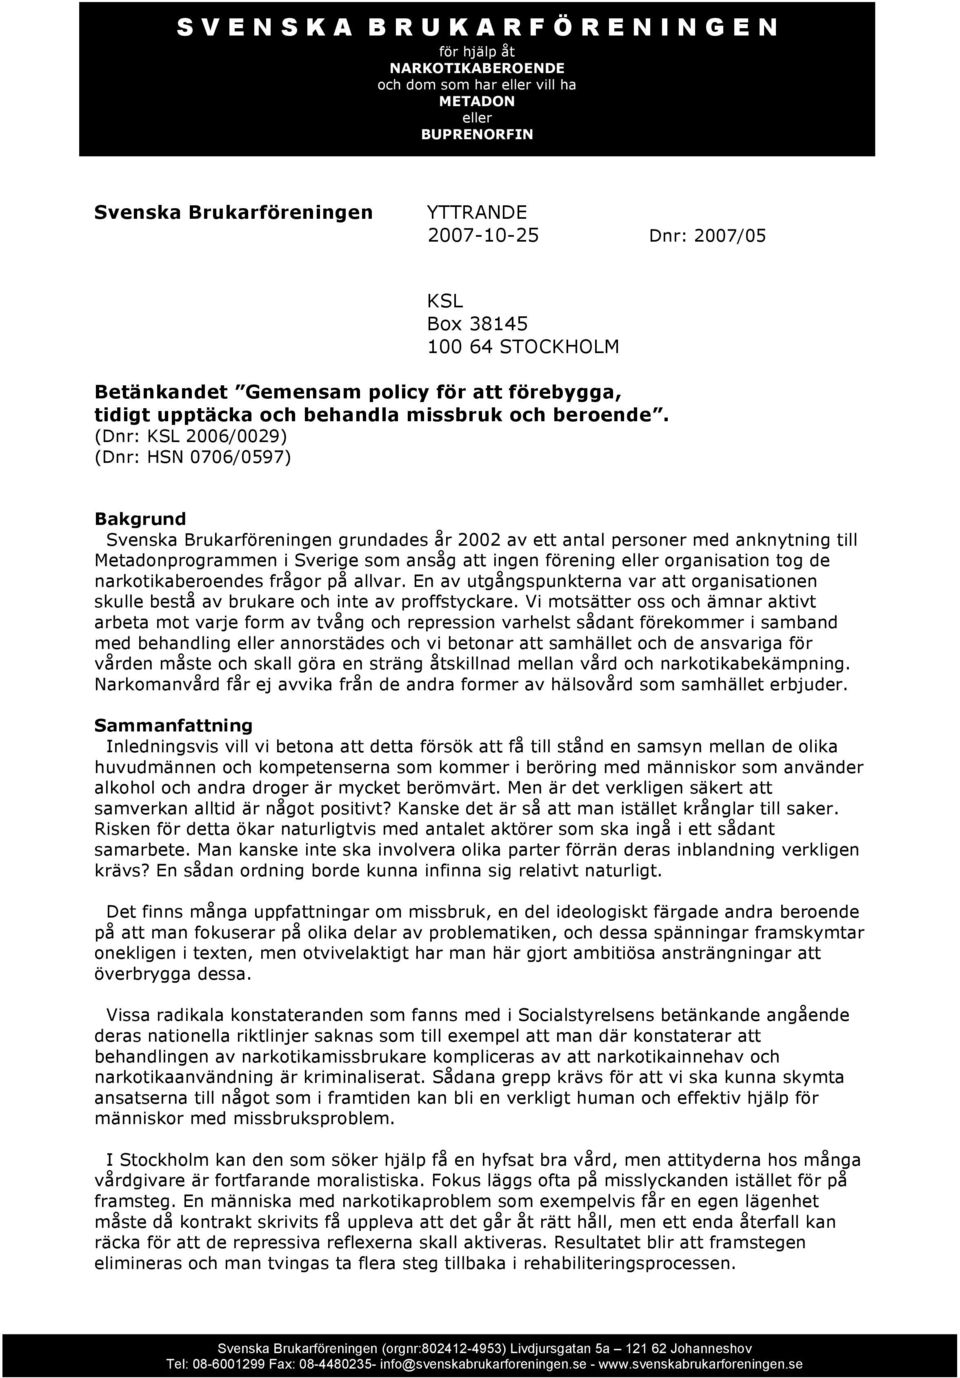 (Dnr: KSL 2006/0029) (Dnr: HSN 0706/0597) Bakgrund Svenska Brukarföreningen grundades år 2002 av ett antal personer med anknytning till Metadonprogrammen i Sverige som ansåg att ingen förening eller